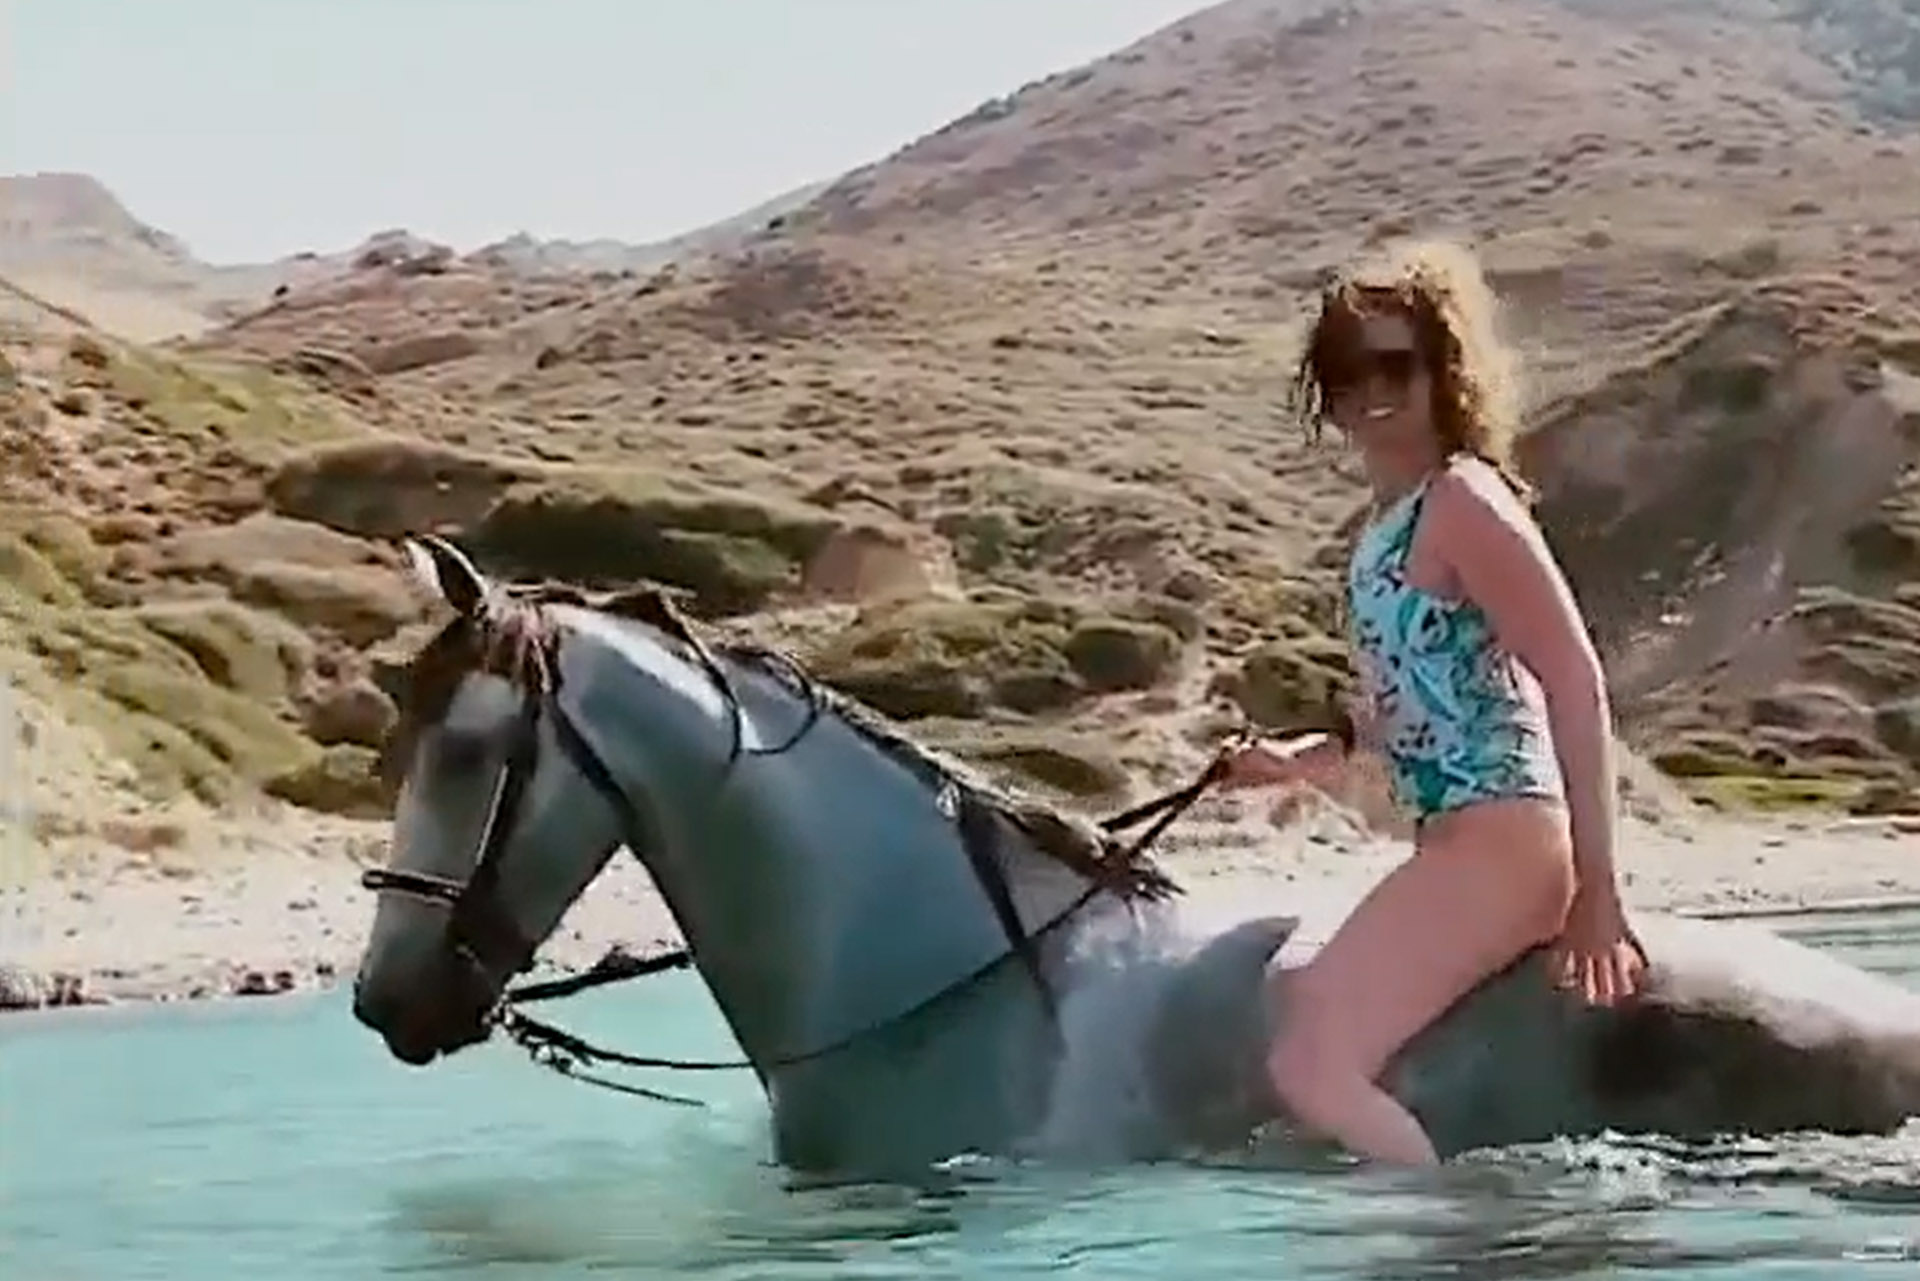 Levette a görög nyaralós-lovaglós videót Tüttő Kata az Instagramról